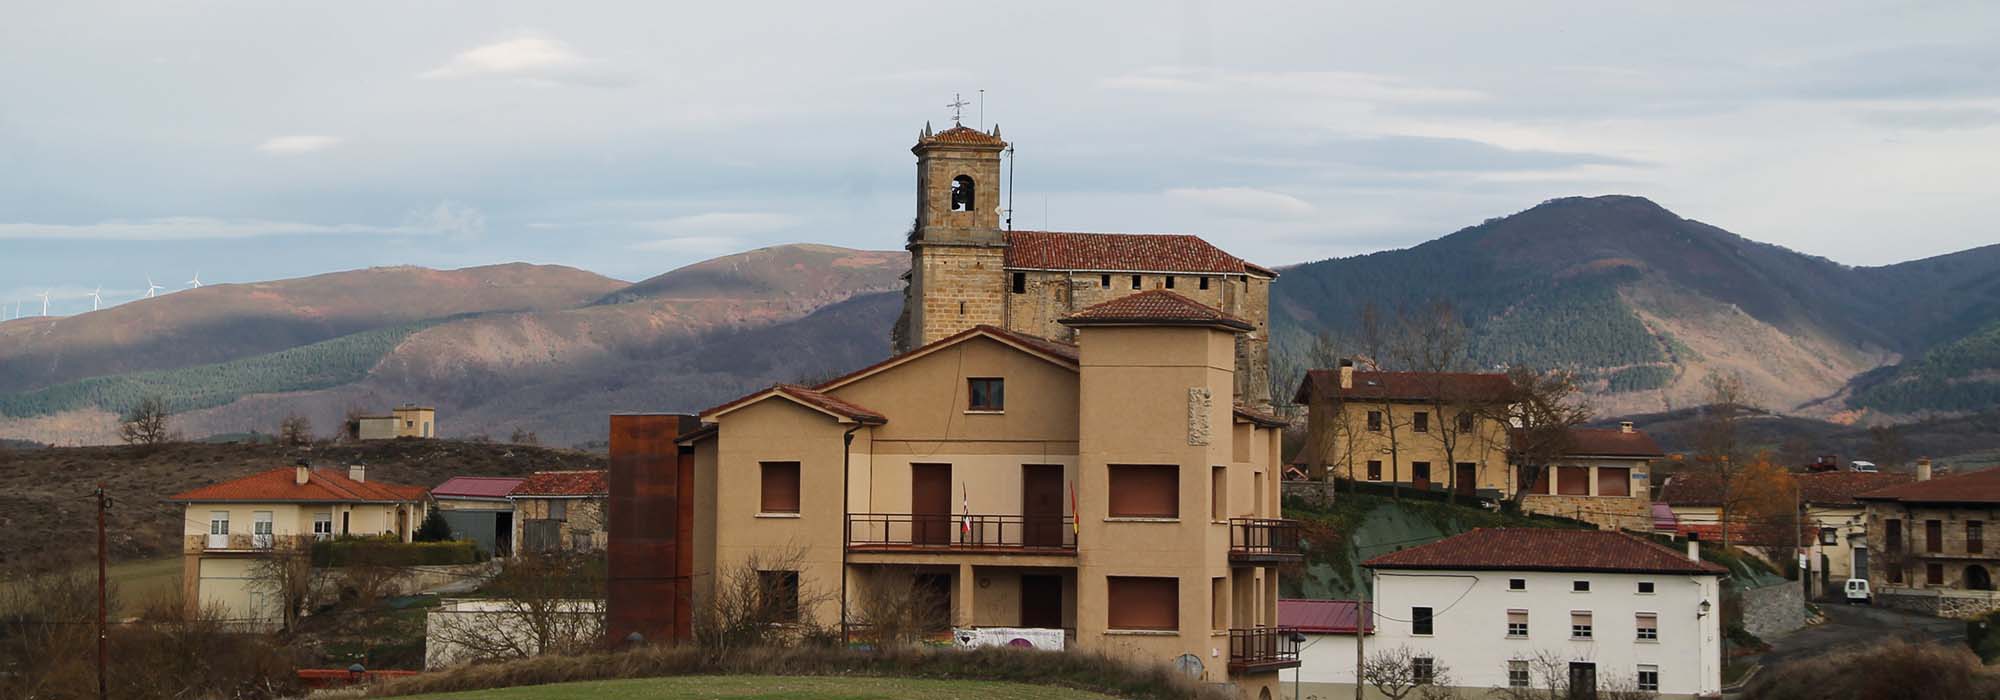 4. Ayuntamiento de San Millán